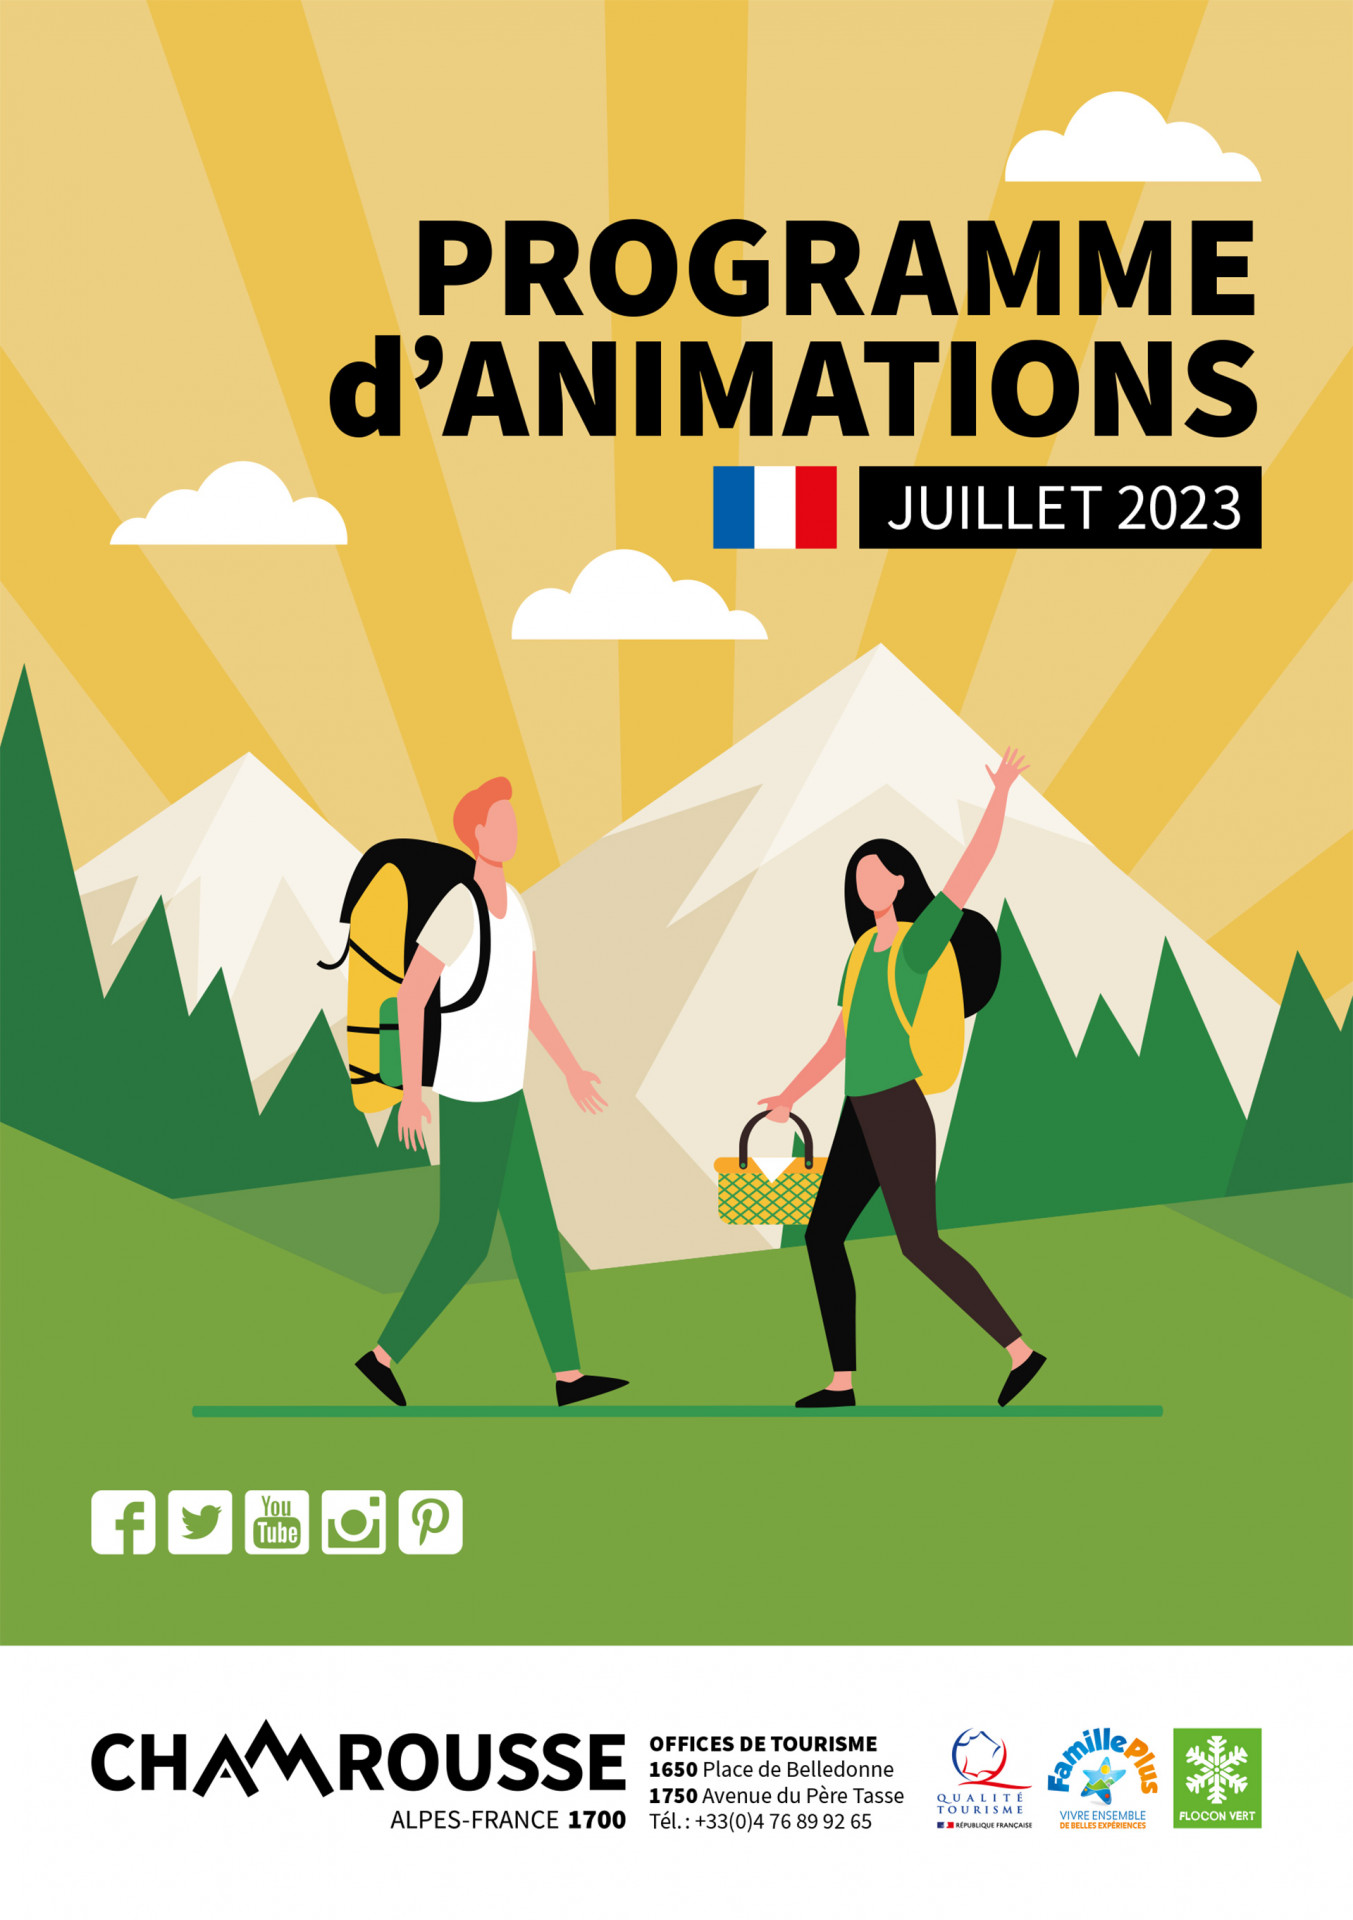 Chamrousse programme animation événement juillet été 2023 station montagne grenoble belledonne isère alpes france